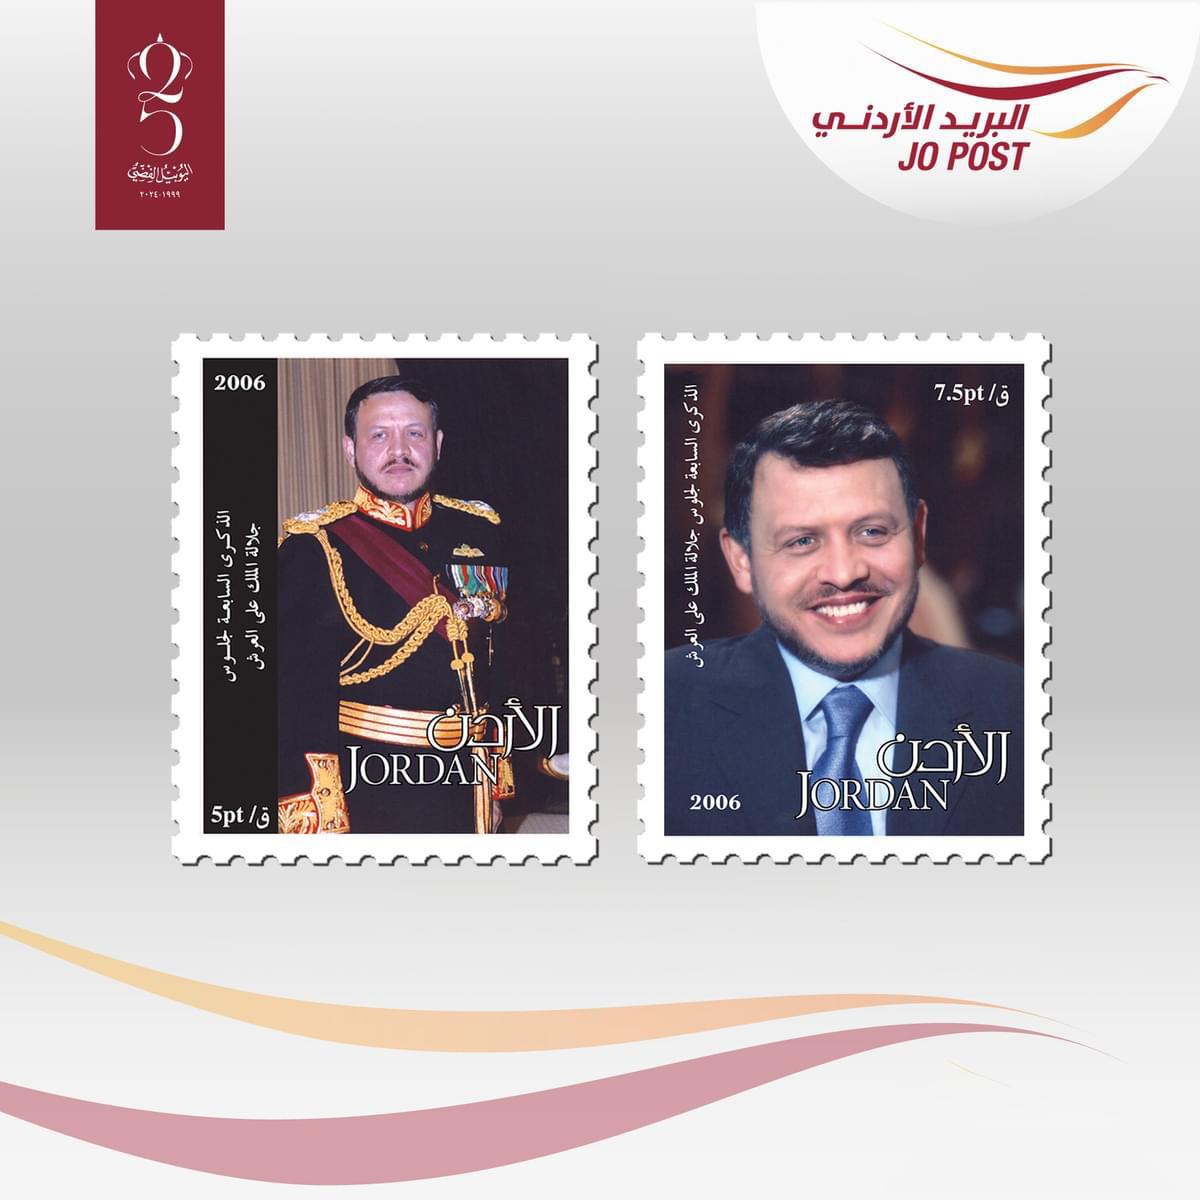 البريد الأردني: الطوابع تعتبر جزءًا من توثيق وتخليد المناسبات الوطنية